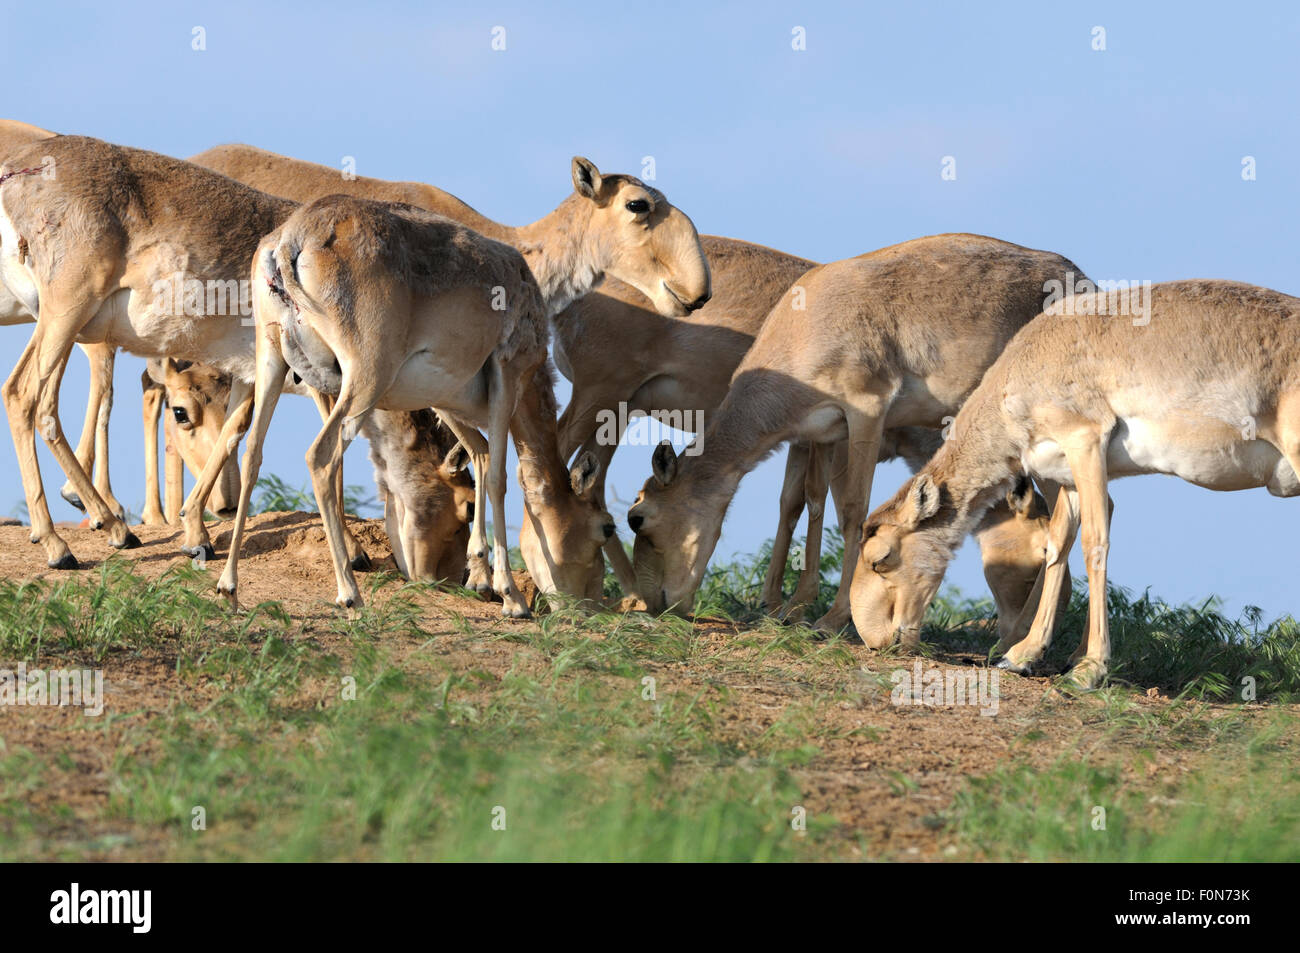 Les antilopes saïga (Saiga tatarica) lécher le sel de la terre près de Cherniye zemli (terre noire), Réserve naturelle de Kalmoukie, en Russie, en mai 2009 Banque D'Images